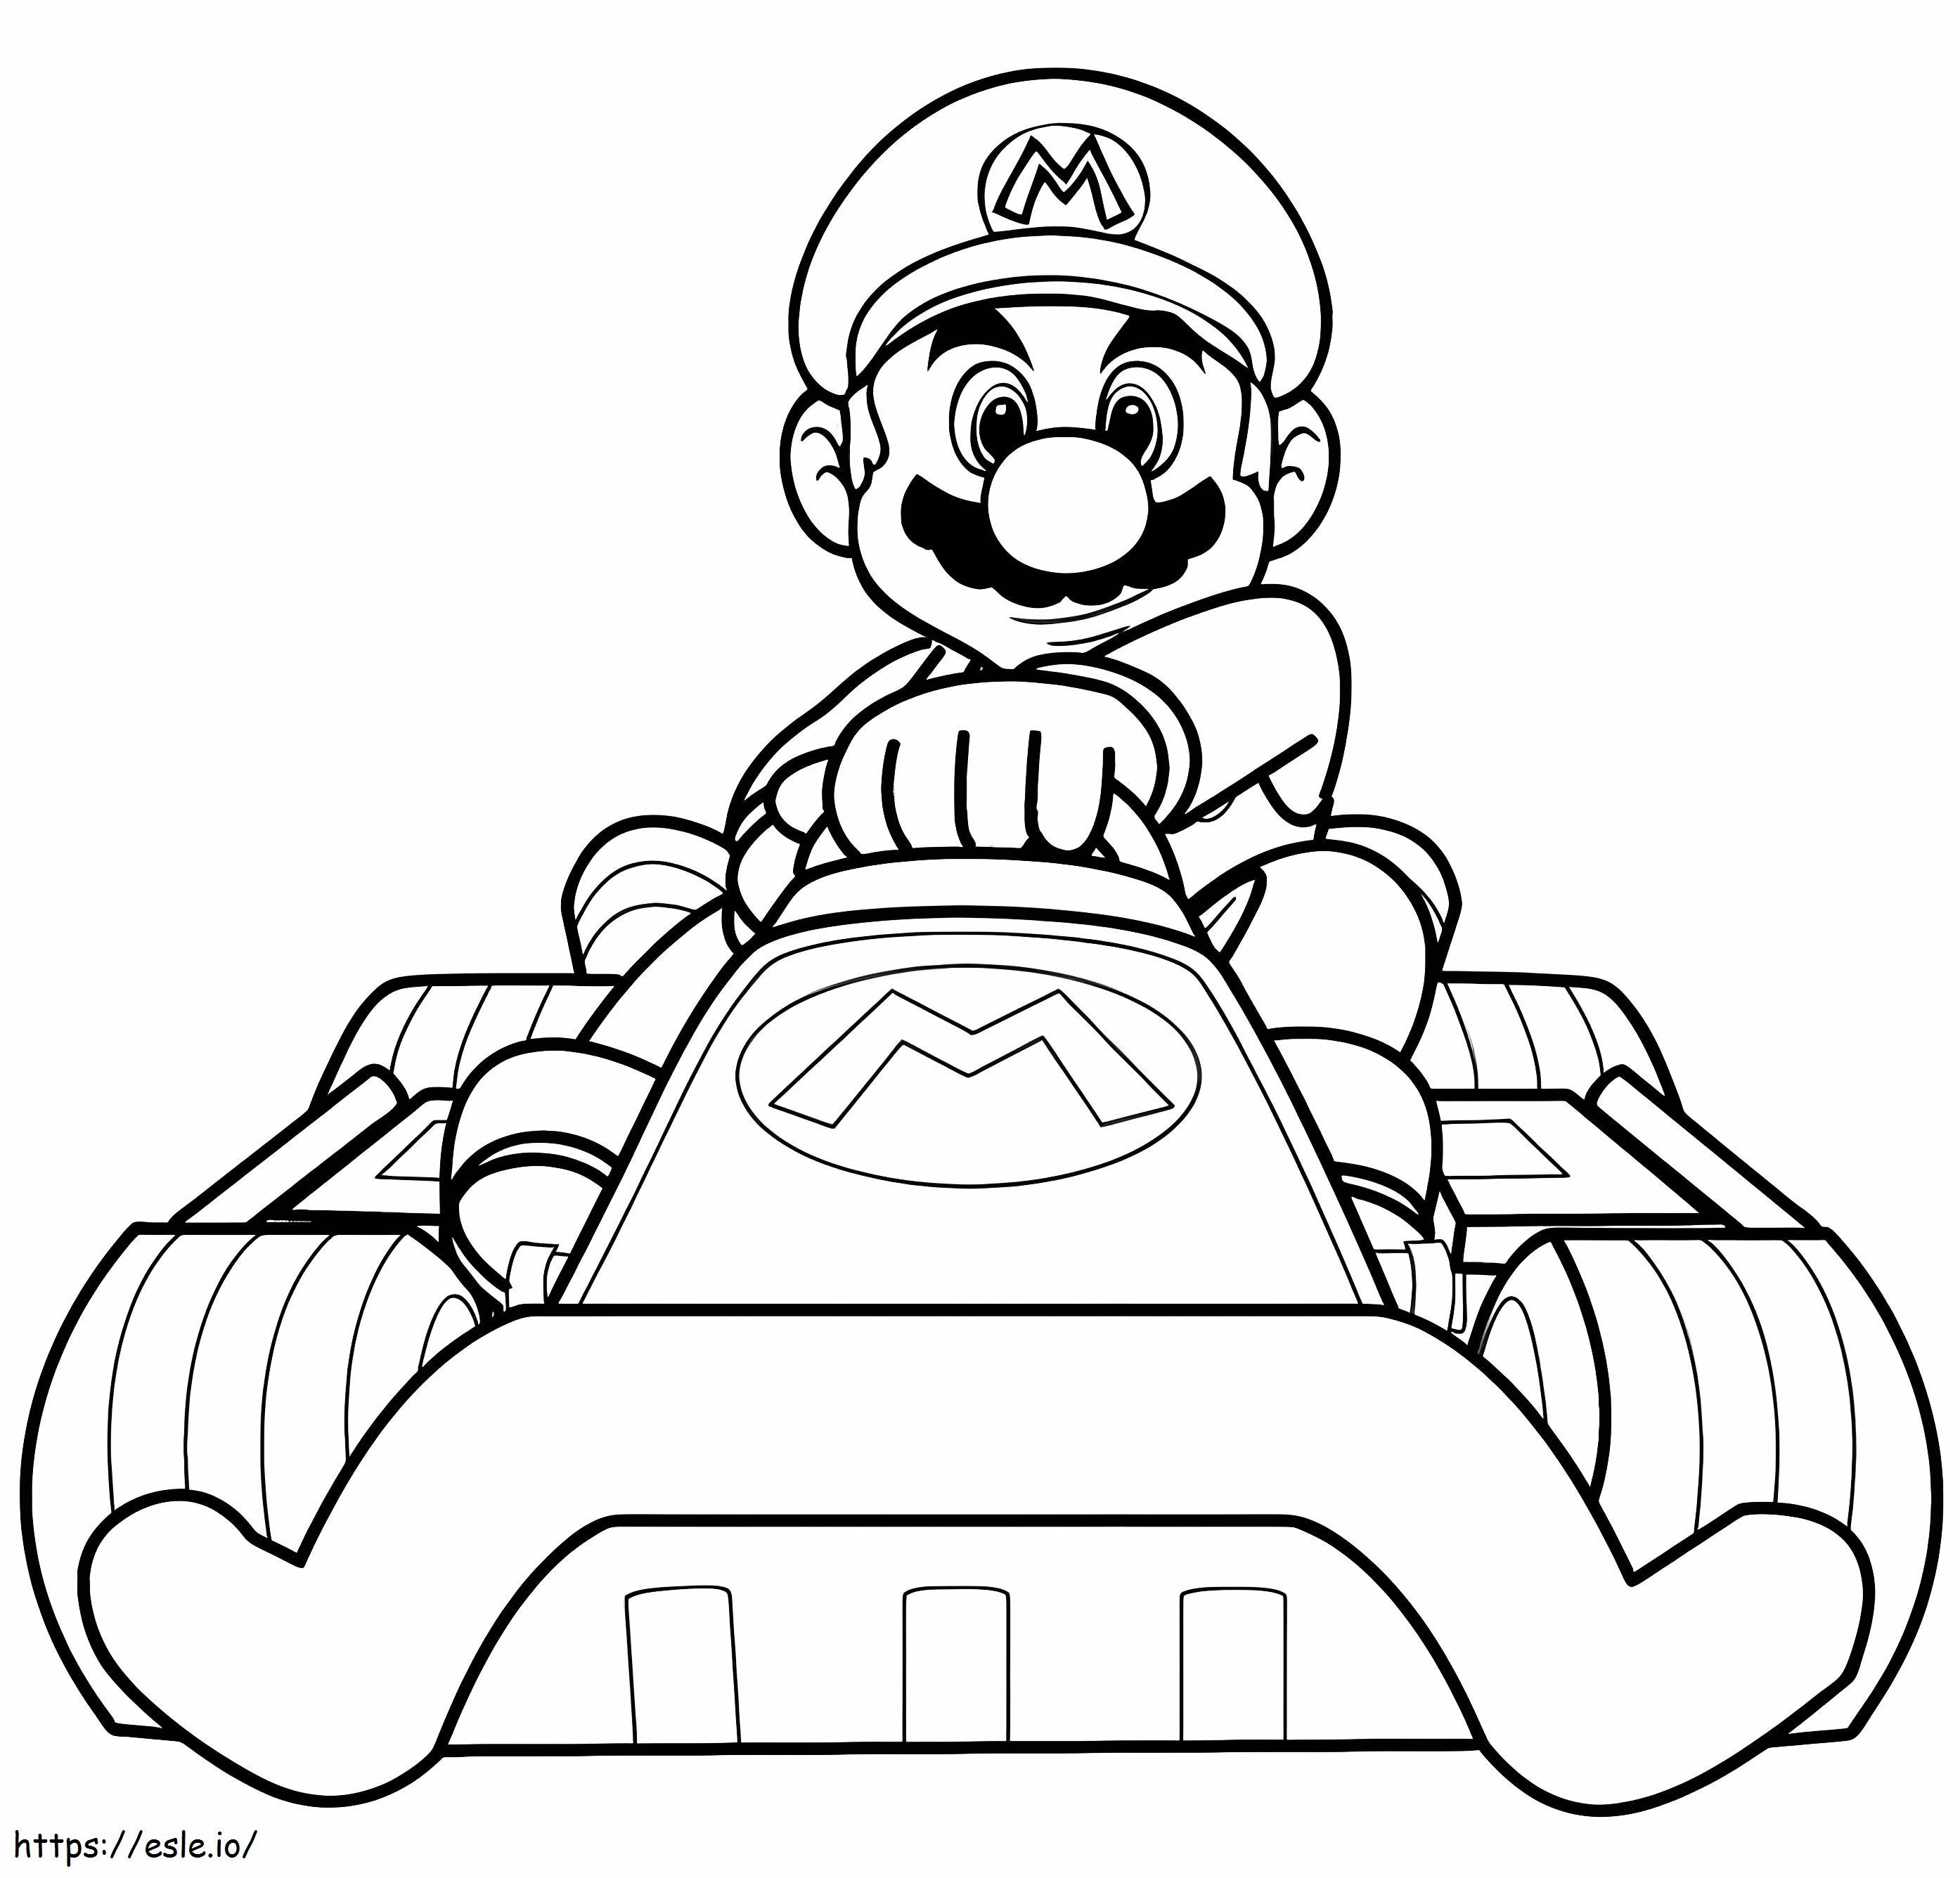 1578365496 Mario Kart de colorat